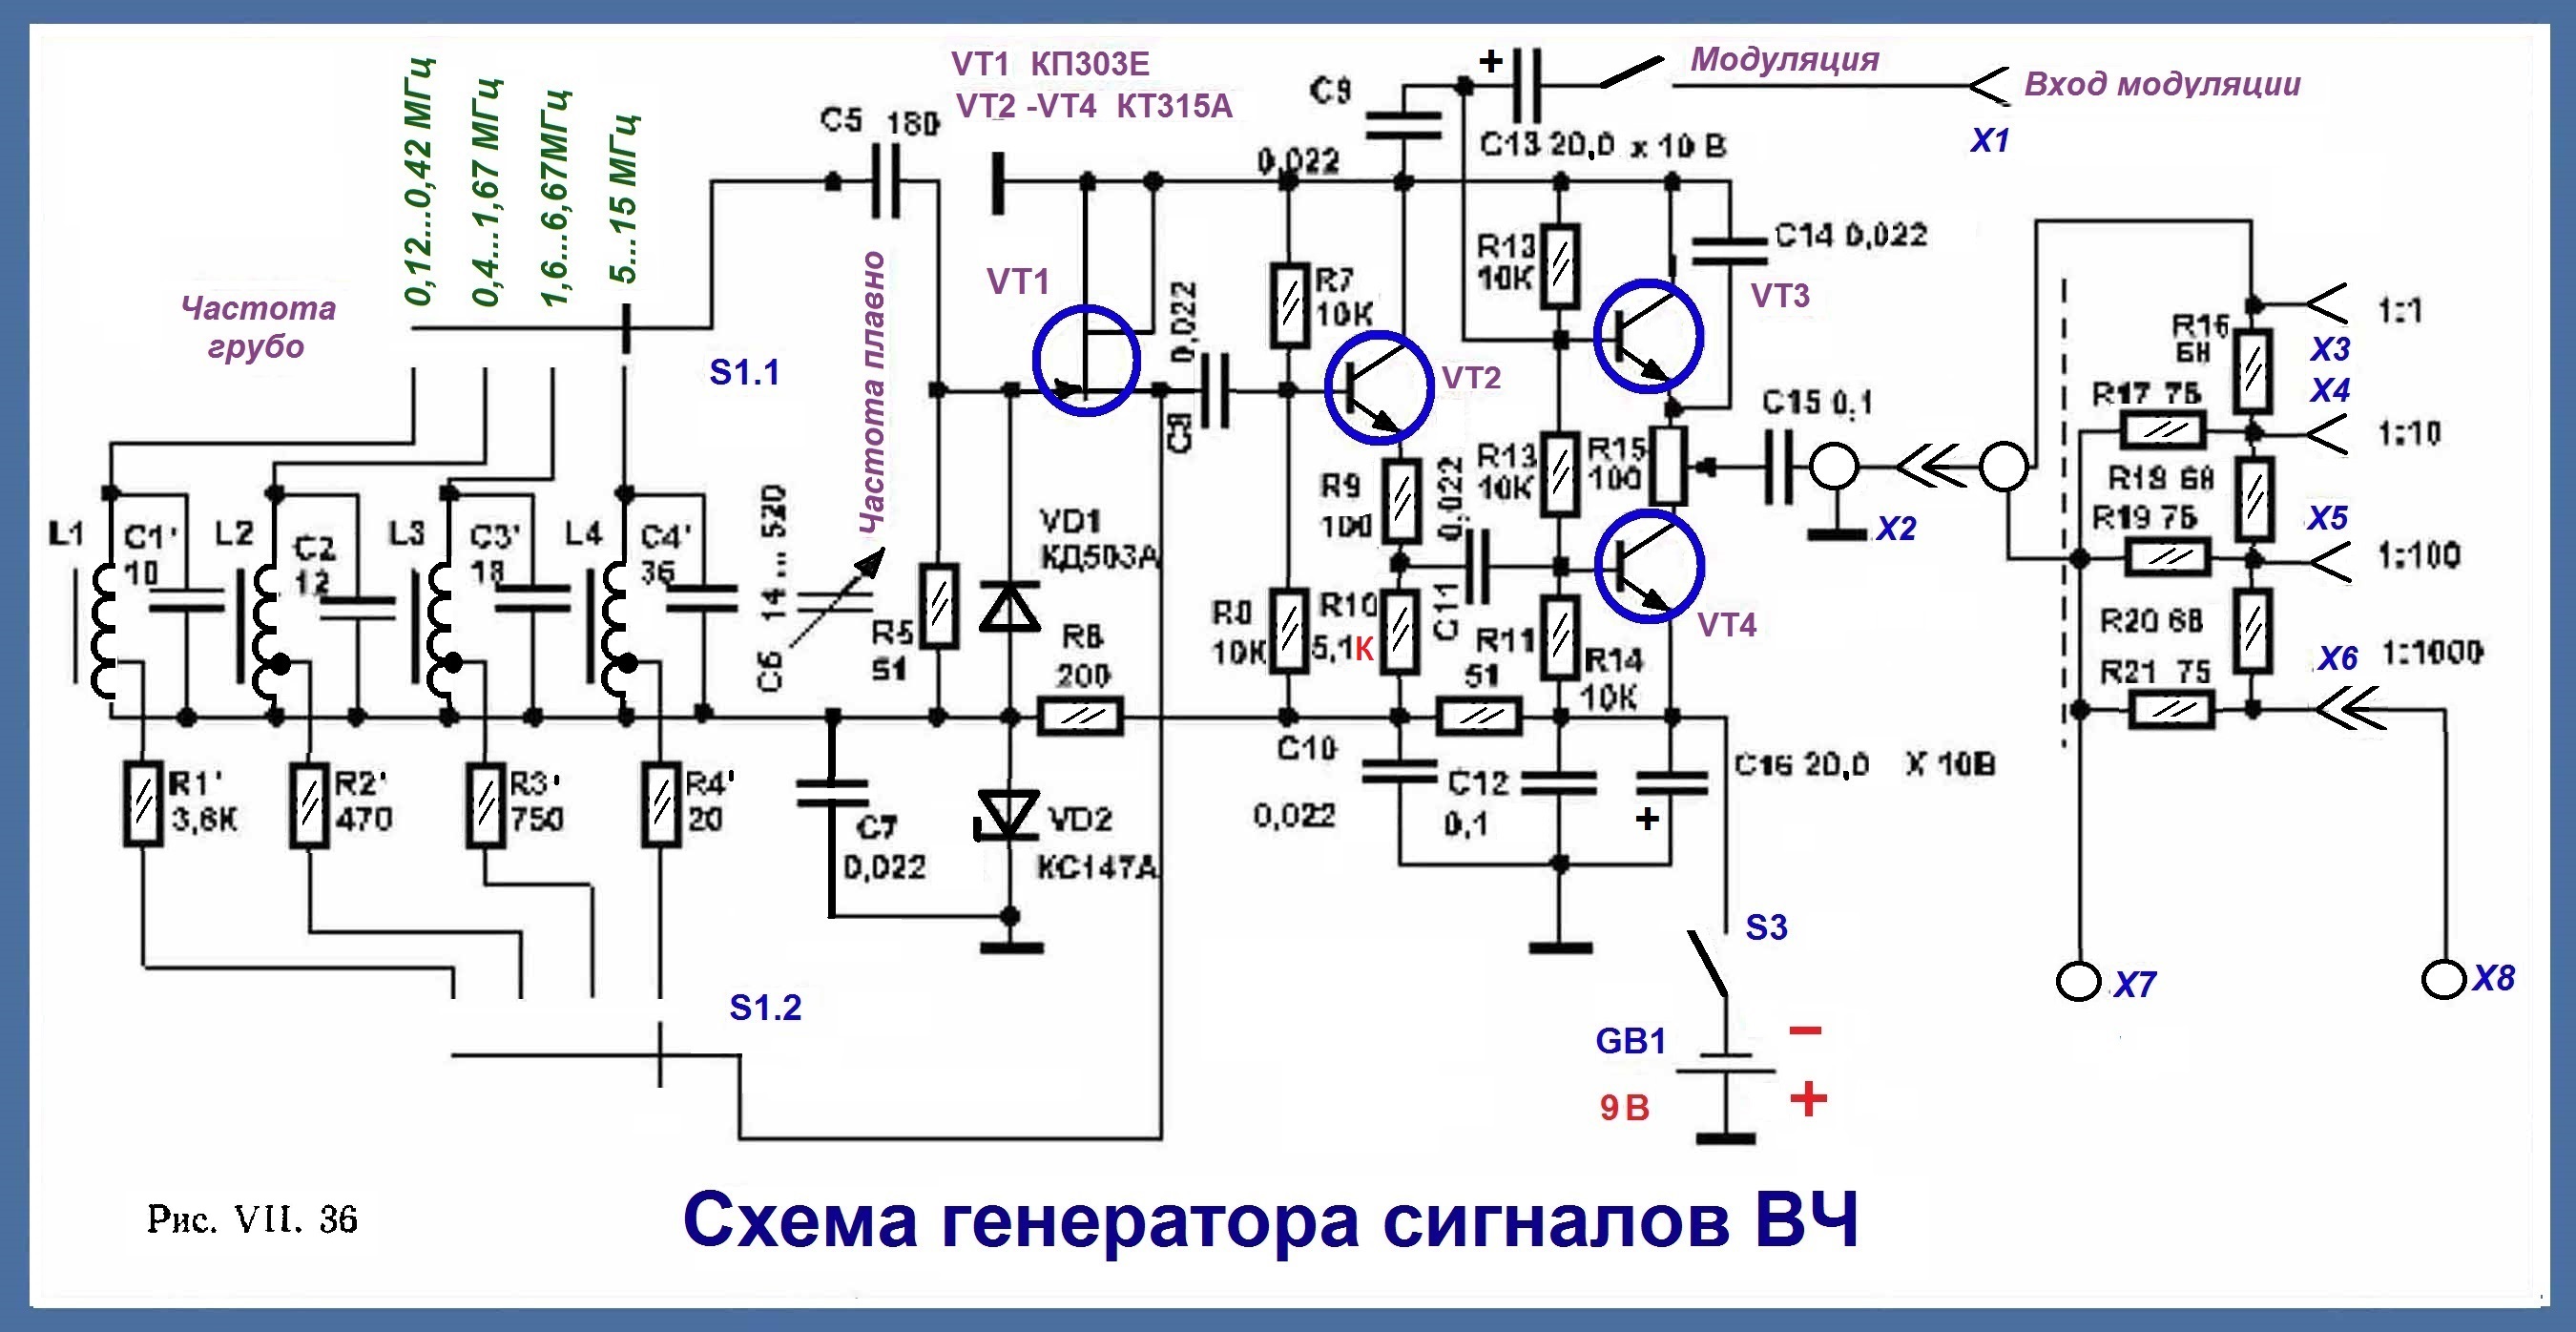 Сигнал-генератор 80 - 900 MHz